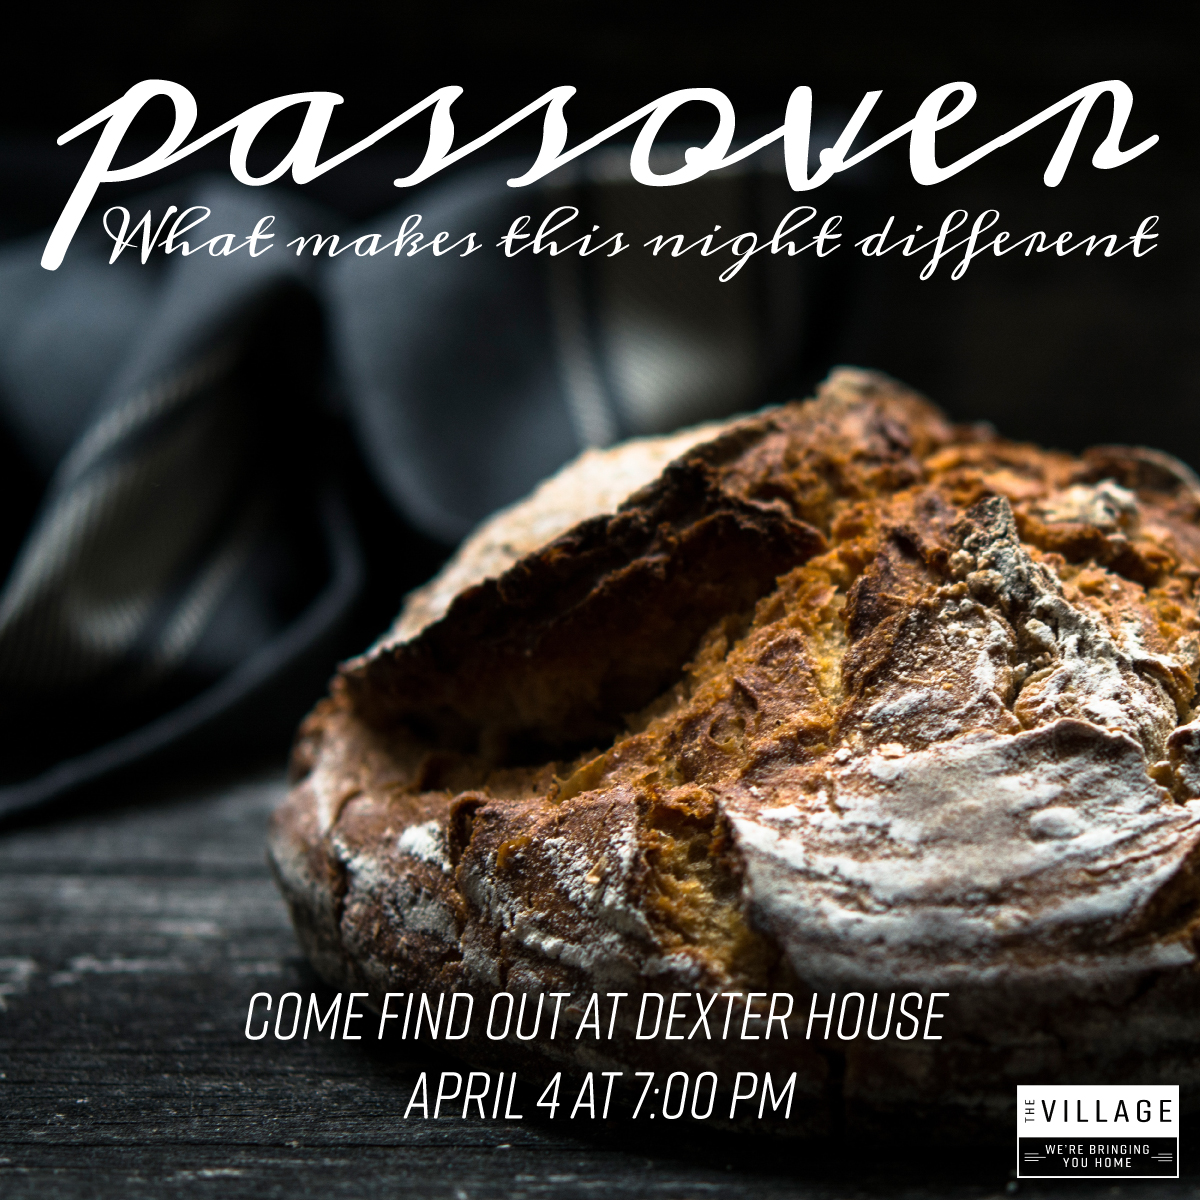 Village-Passover-FB-Insta.jpg